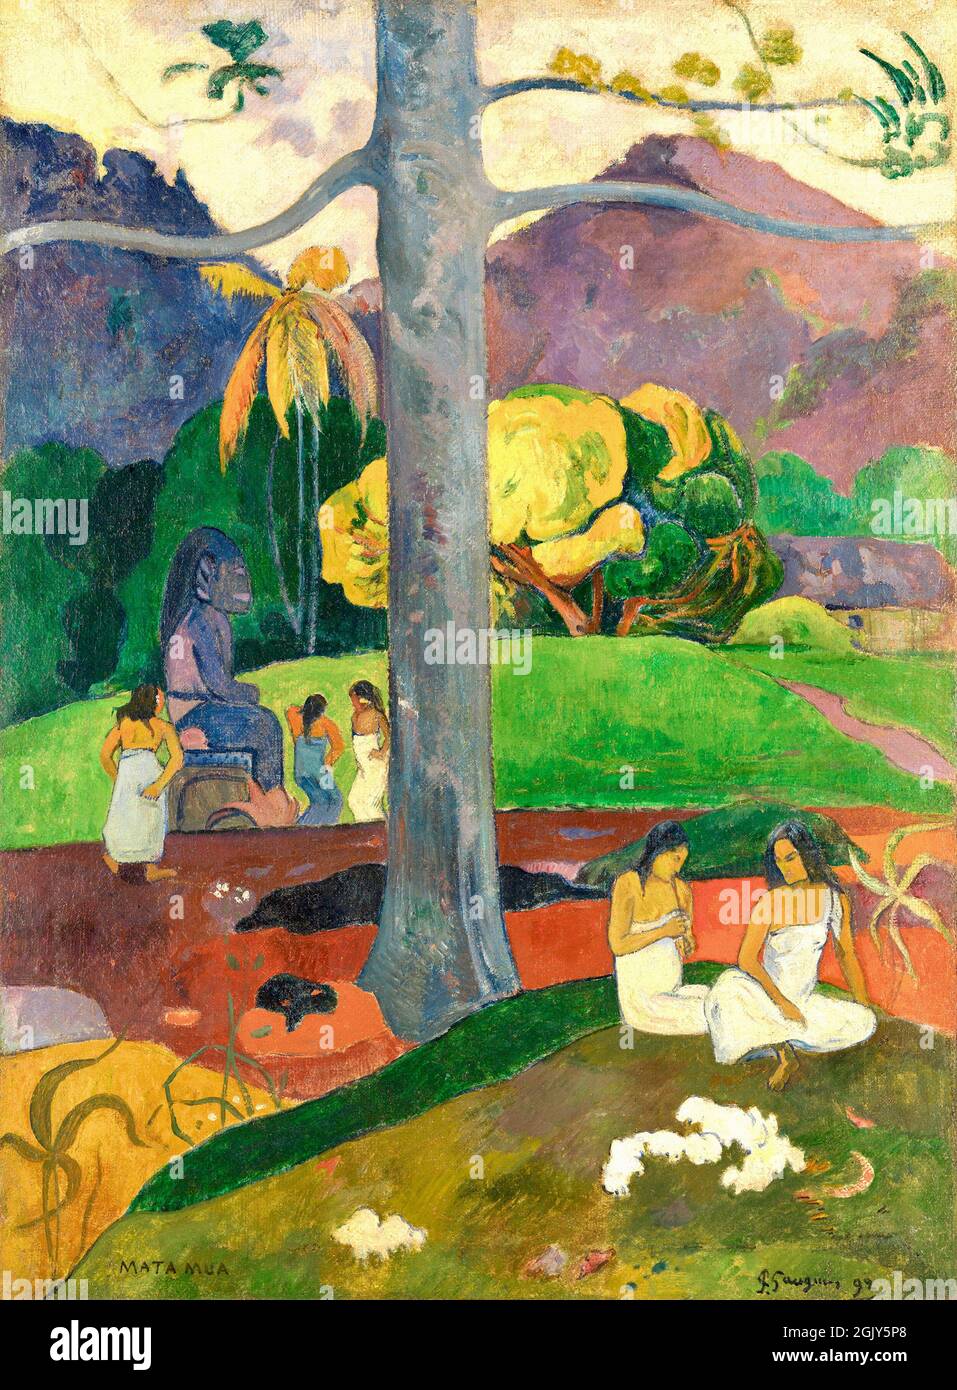 Paul Gauguin Kunstwerk - Matamua - in Olden Times - 1892 Stockfoto